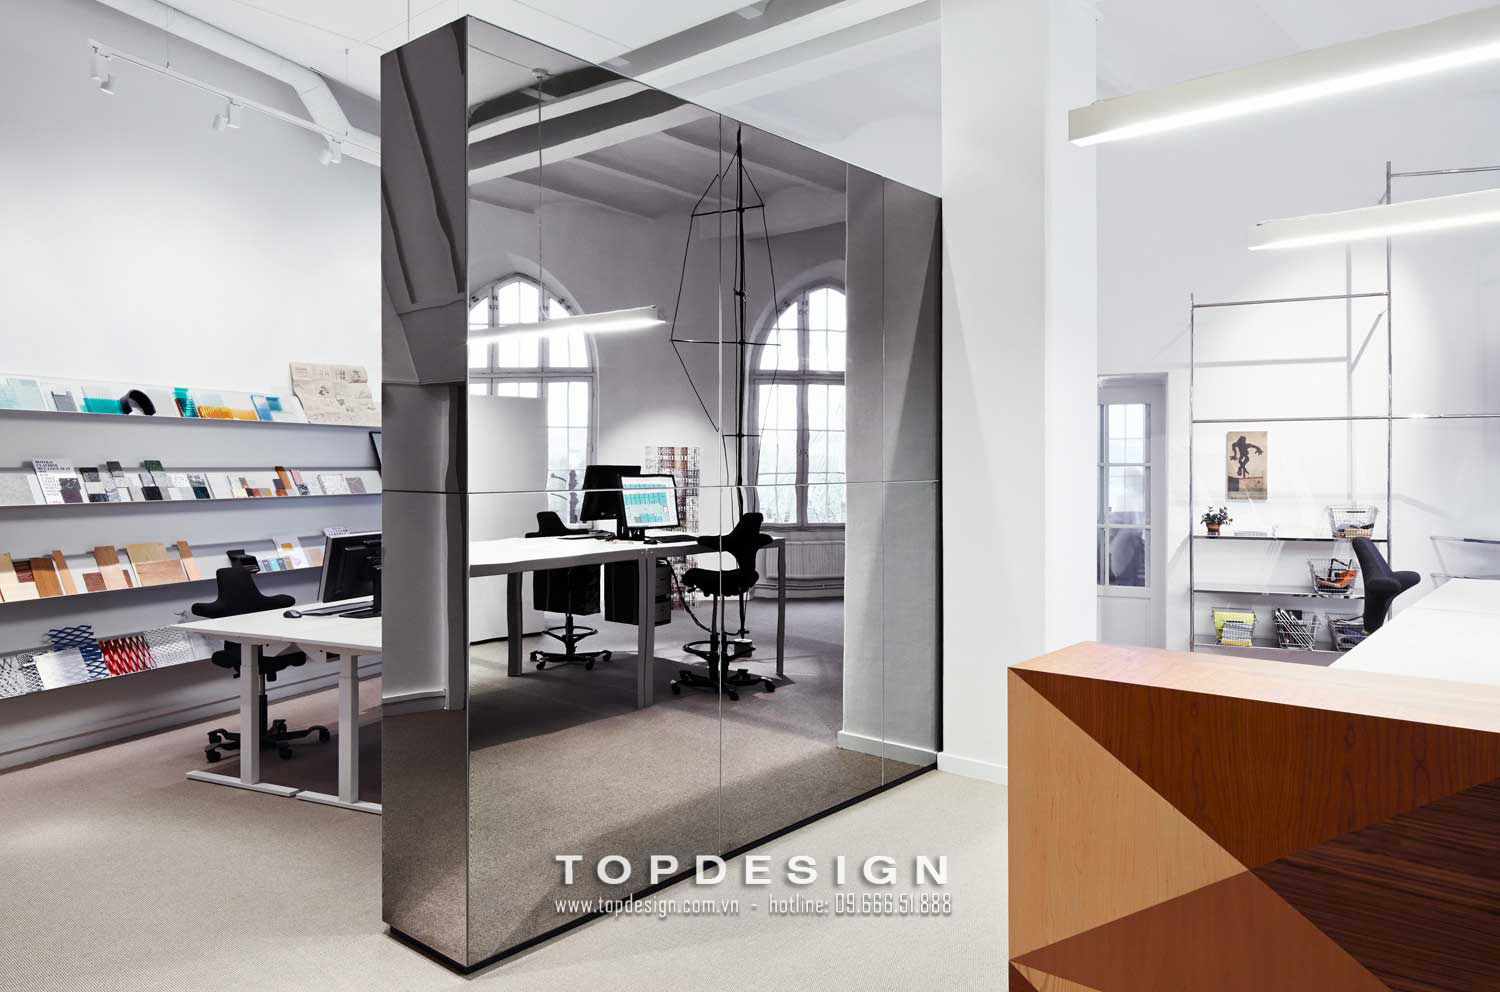 5.mẫu thiết kế decor văn phòng làm việc rộng rãi, tinh tế_TOPDESIGN